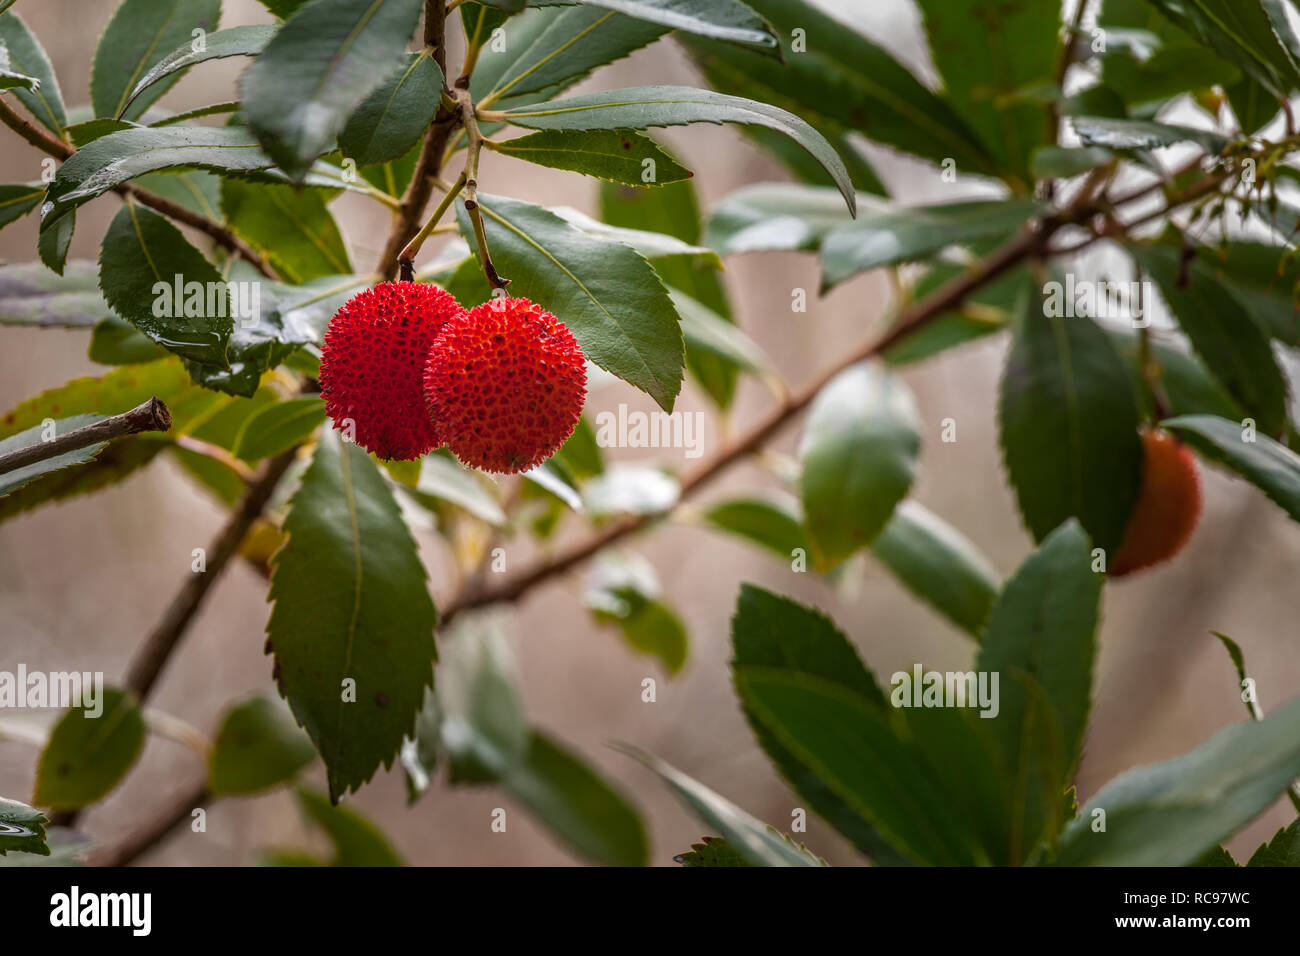 Rote Steinfrucht, manchmal auch als "arbutus - berry, mit einer rauhen Oberfläche Stockfoto